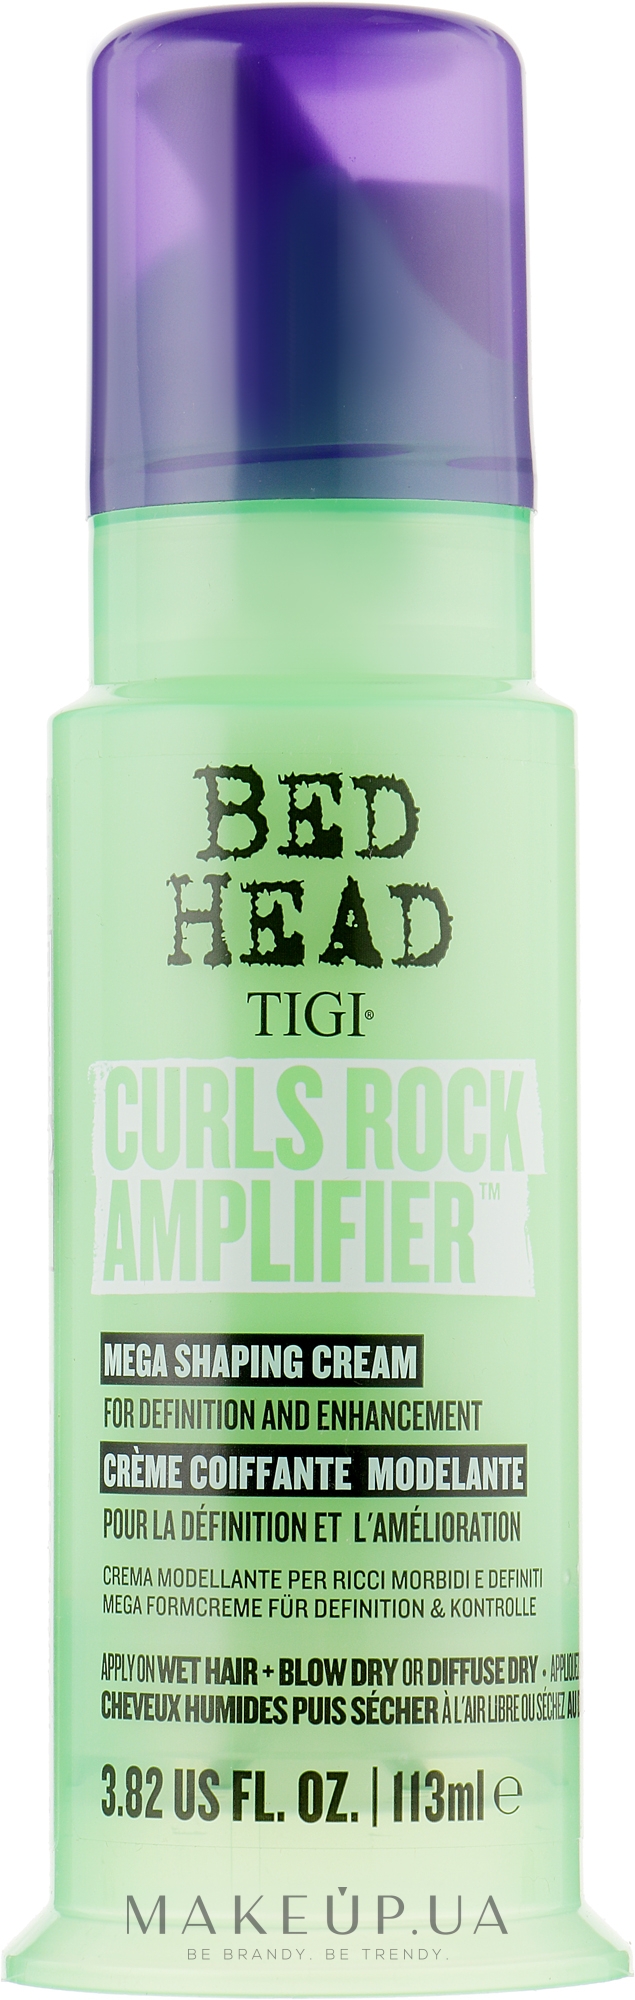 Крем для в'юнкого волосся - Tigi Bed Head Curls Rock Amplifier Curly Hair Cream — фото 113ml